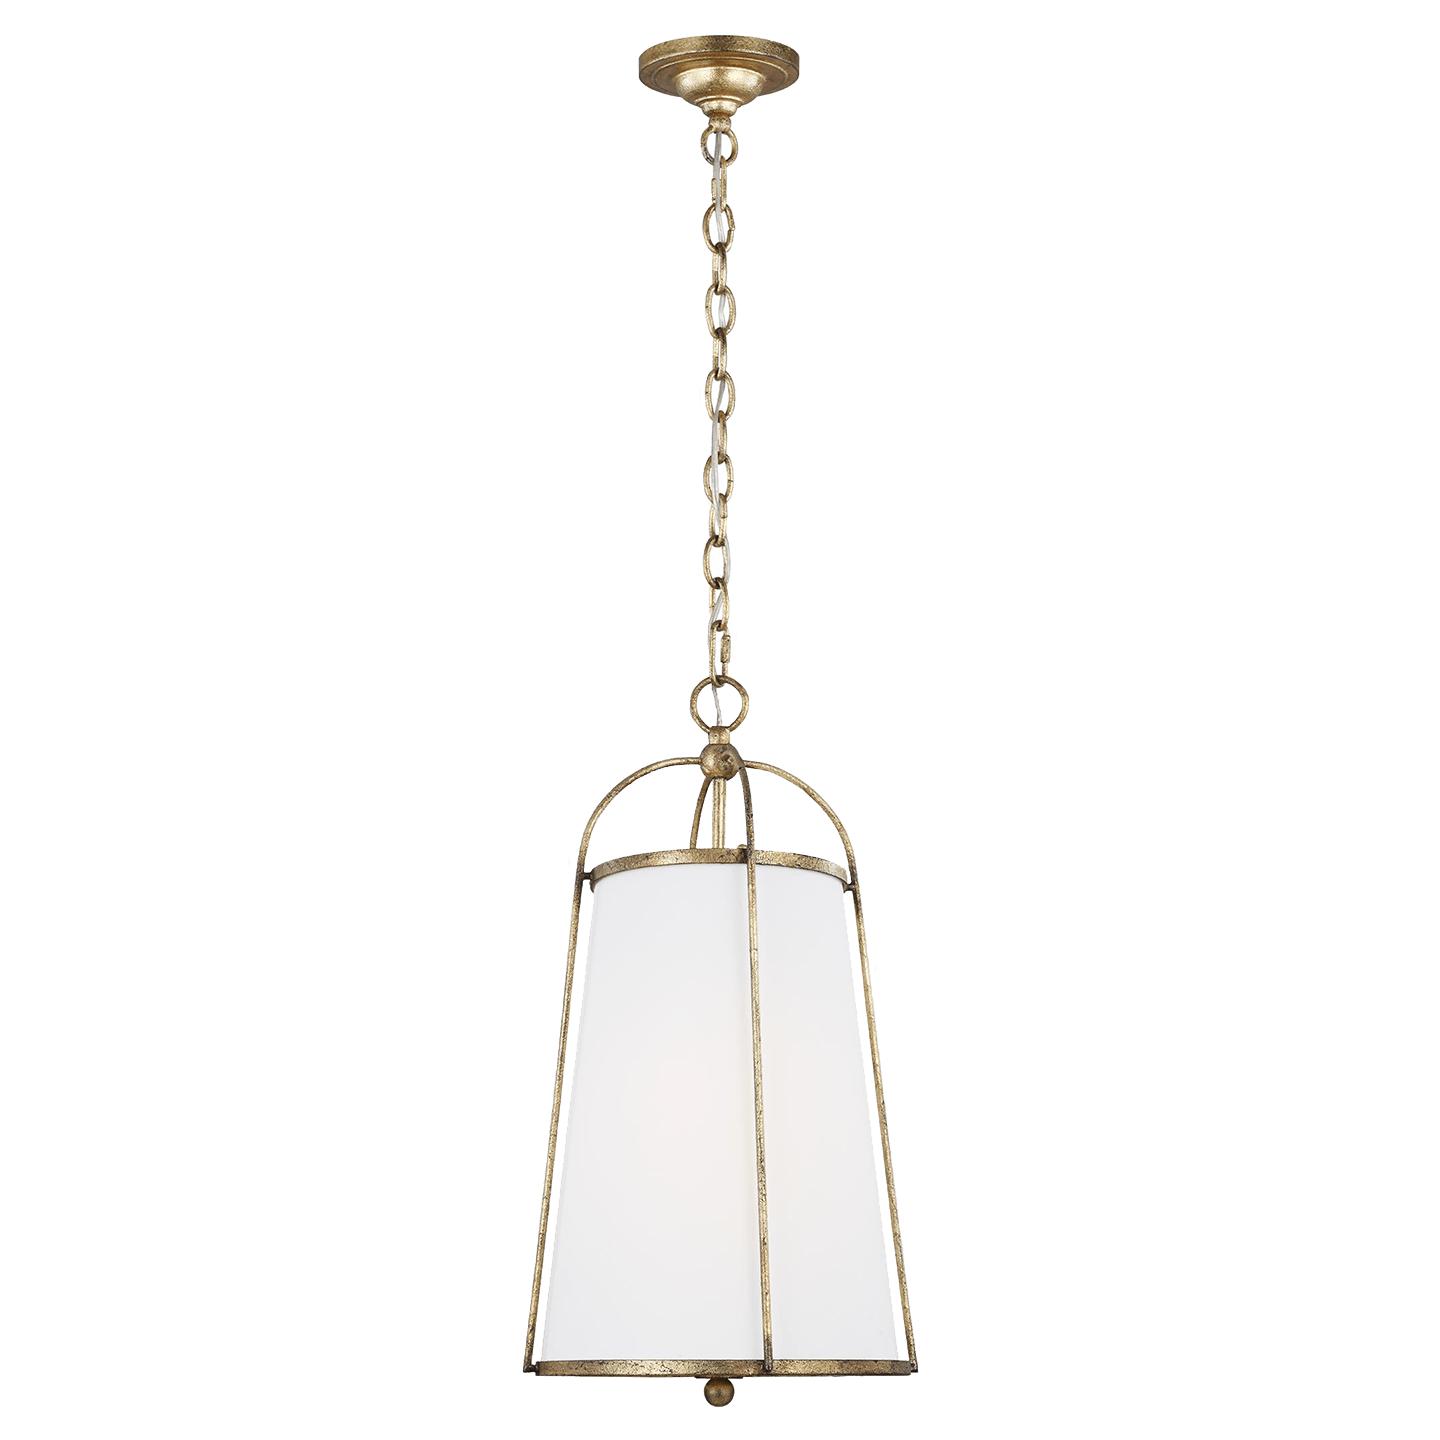 Купить Подвесной светильник Stonington Small Hanging Shade в интернет-магазине roooms.ru